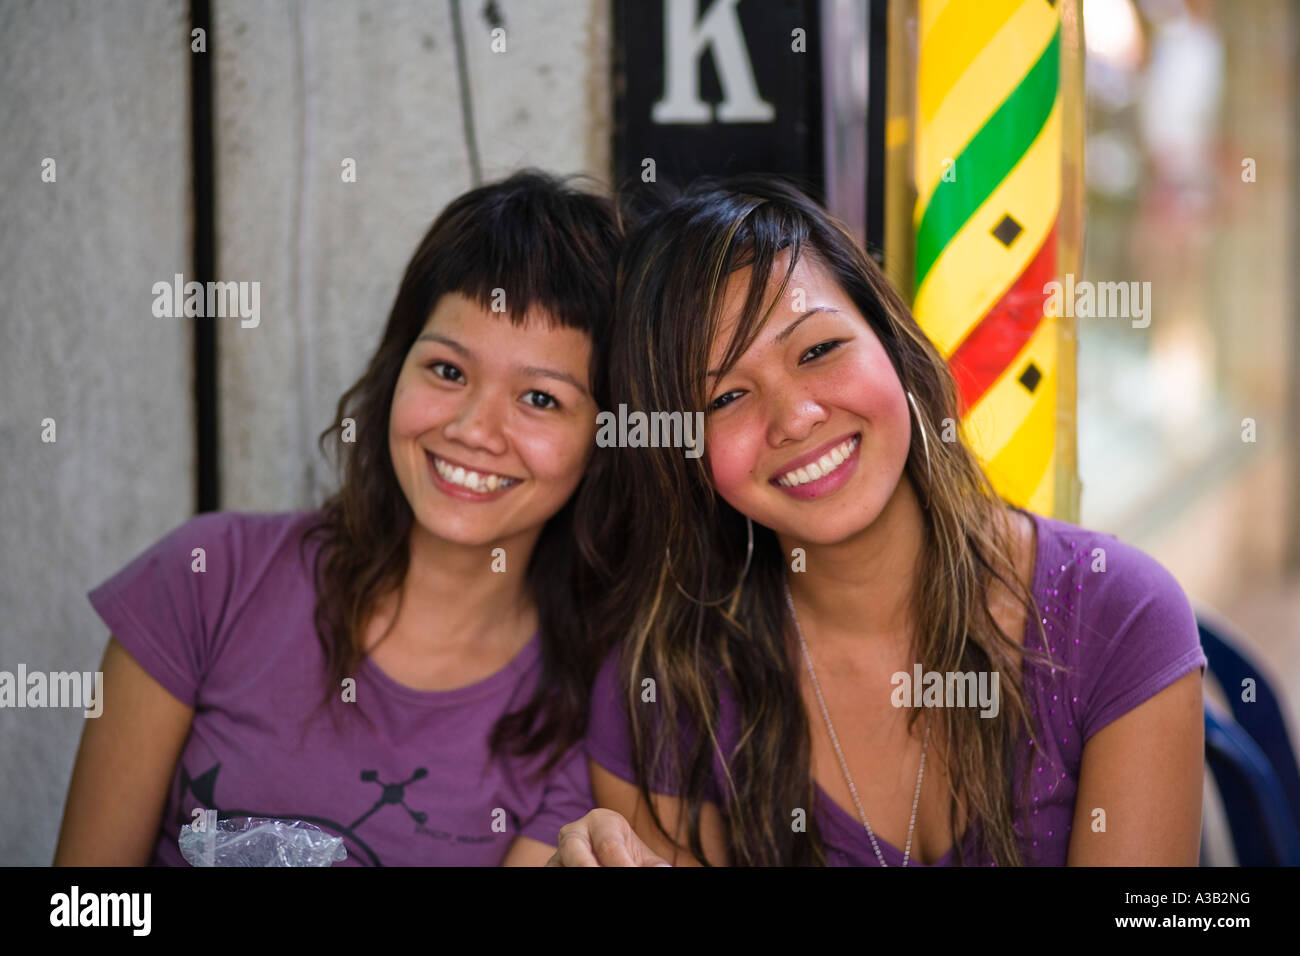 Portrait de filles Thai Bangkok Thailande Asie Banque D'Images